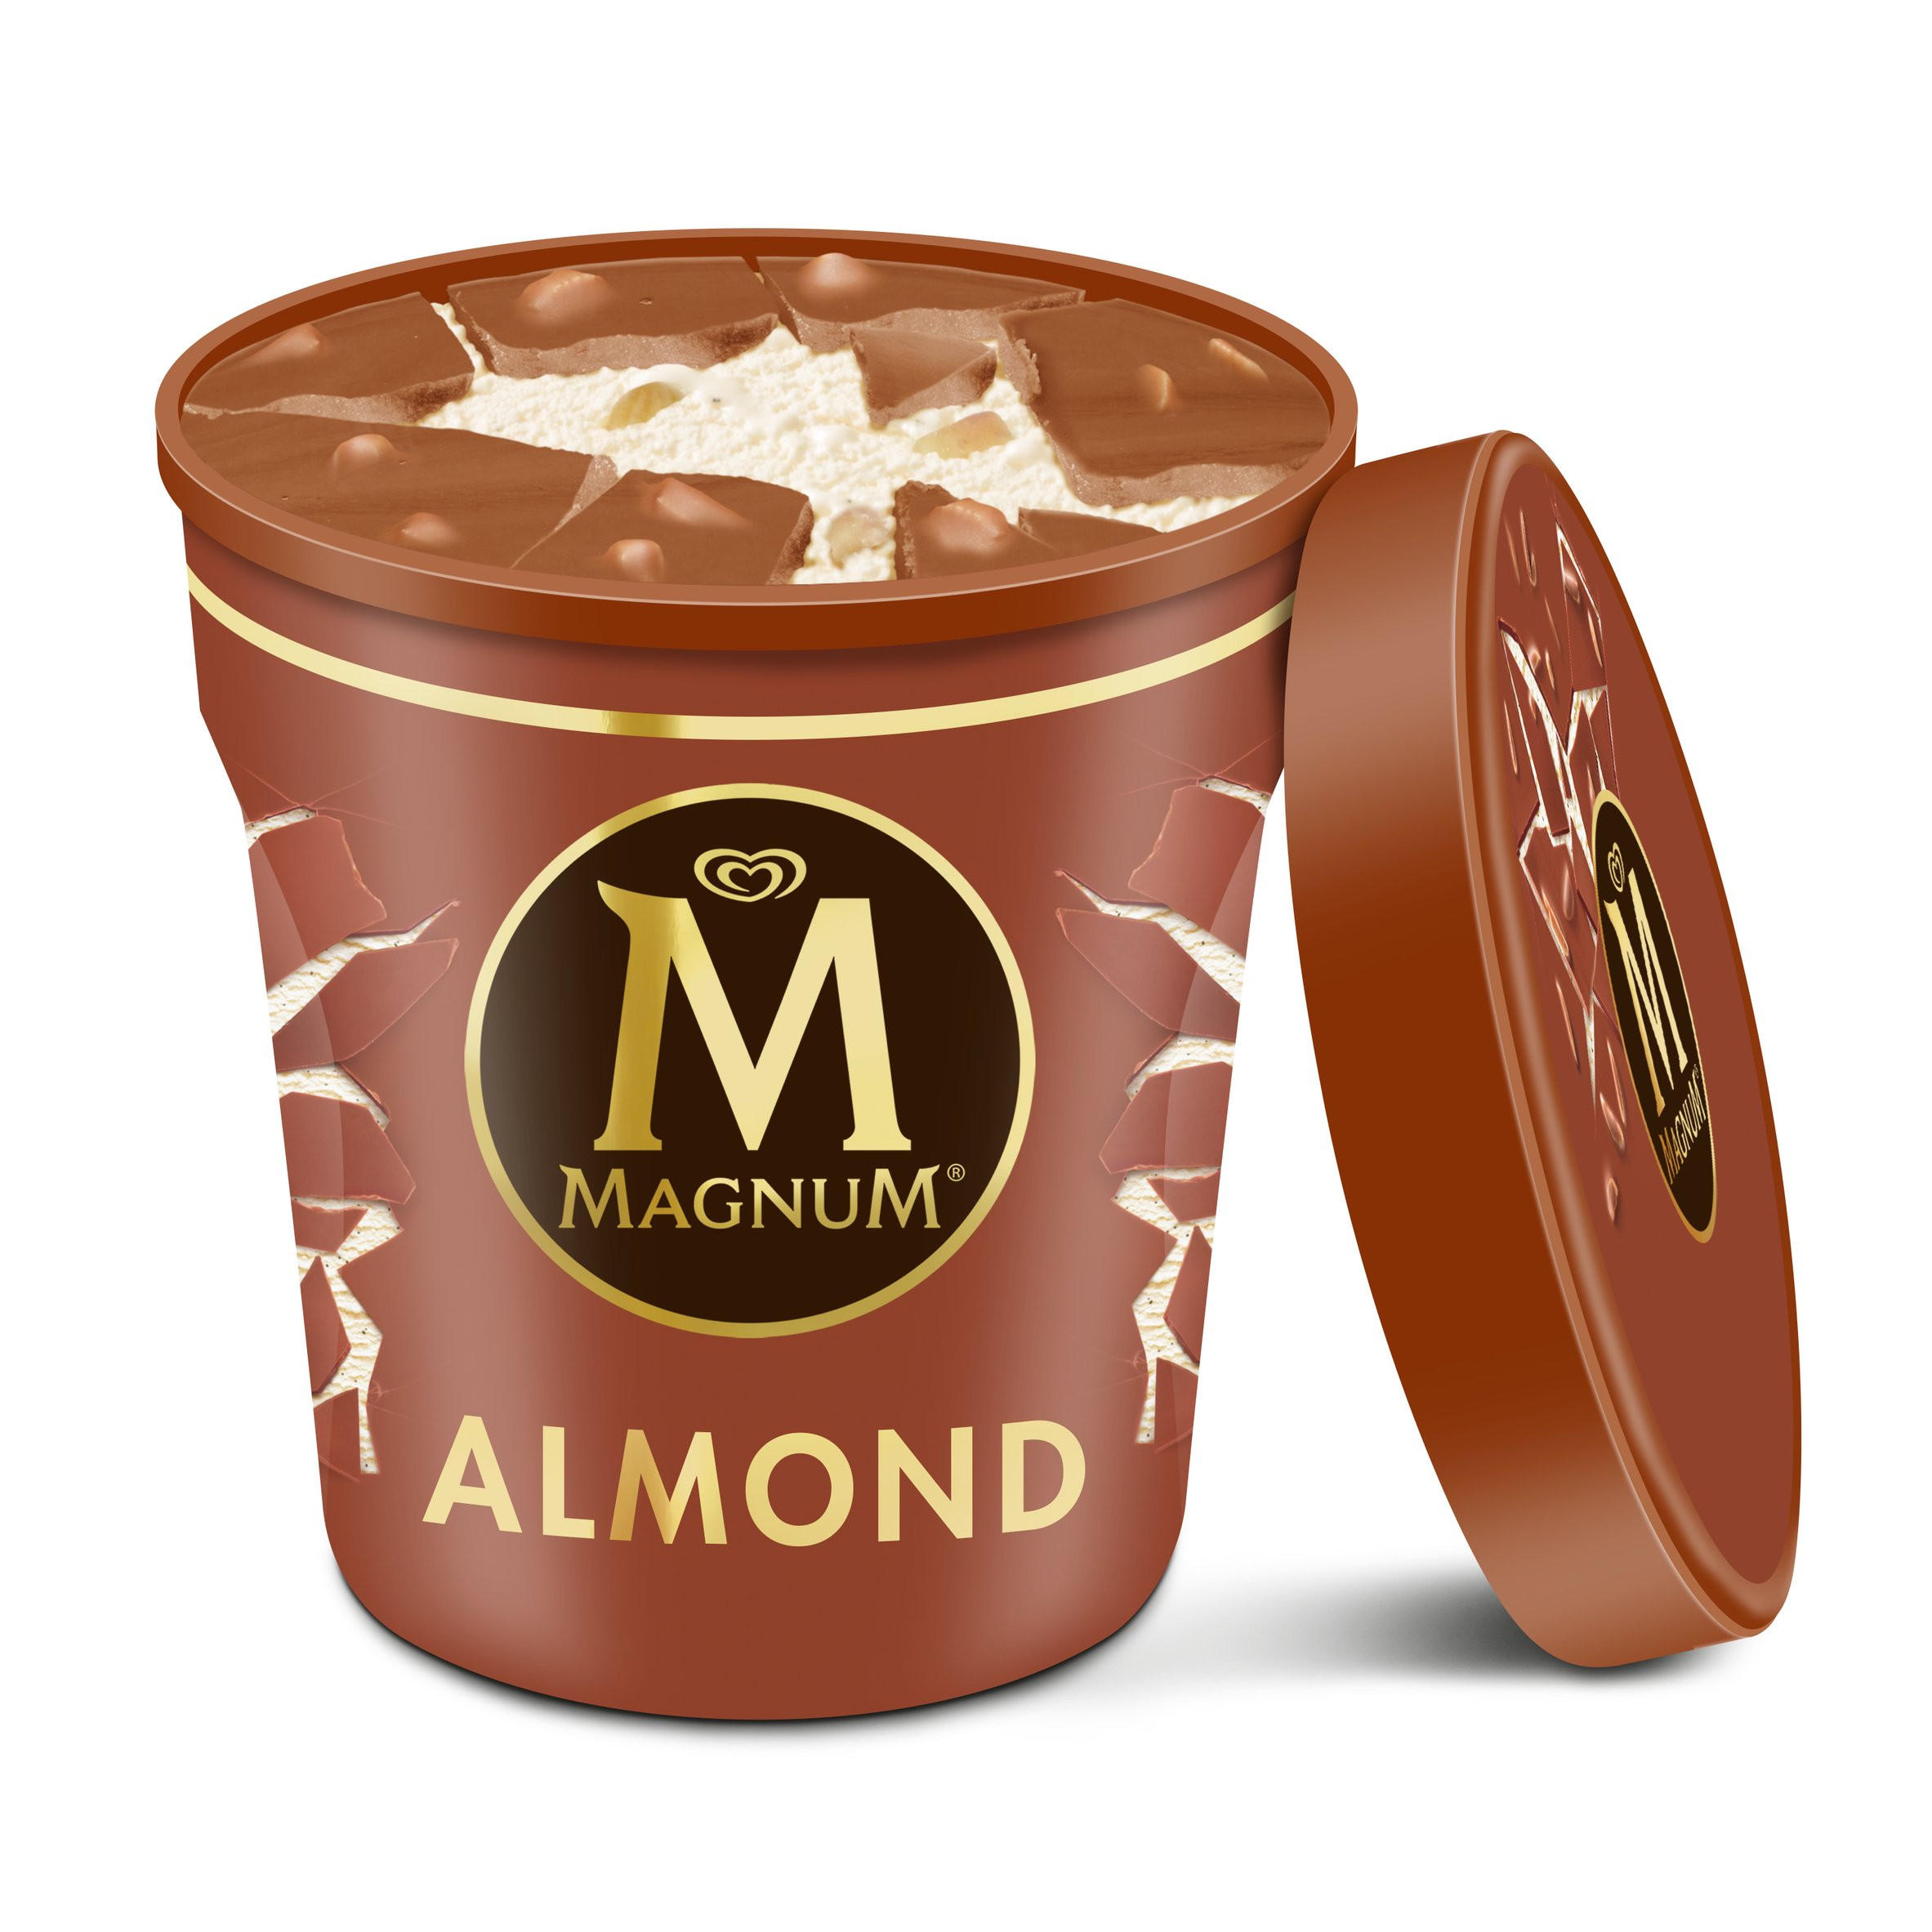 Magnum Tub  Almond Ice  Cream  440ml Ice  Cream  Tubs  